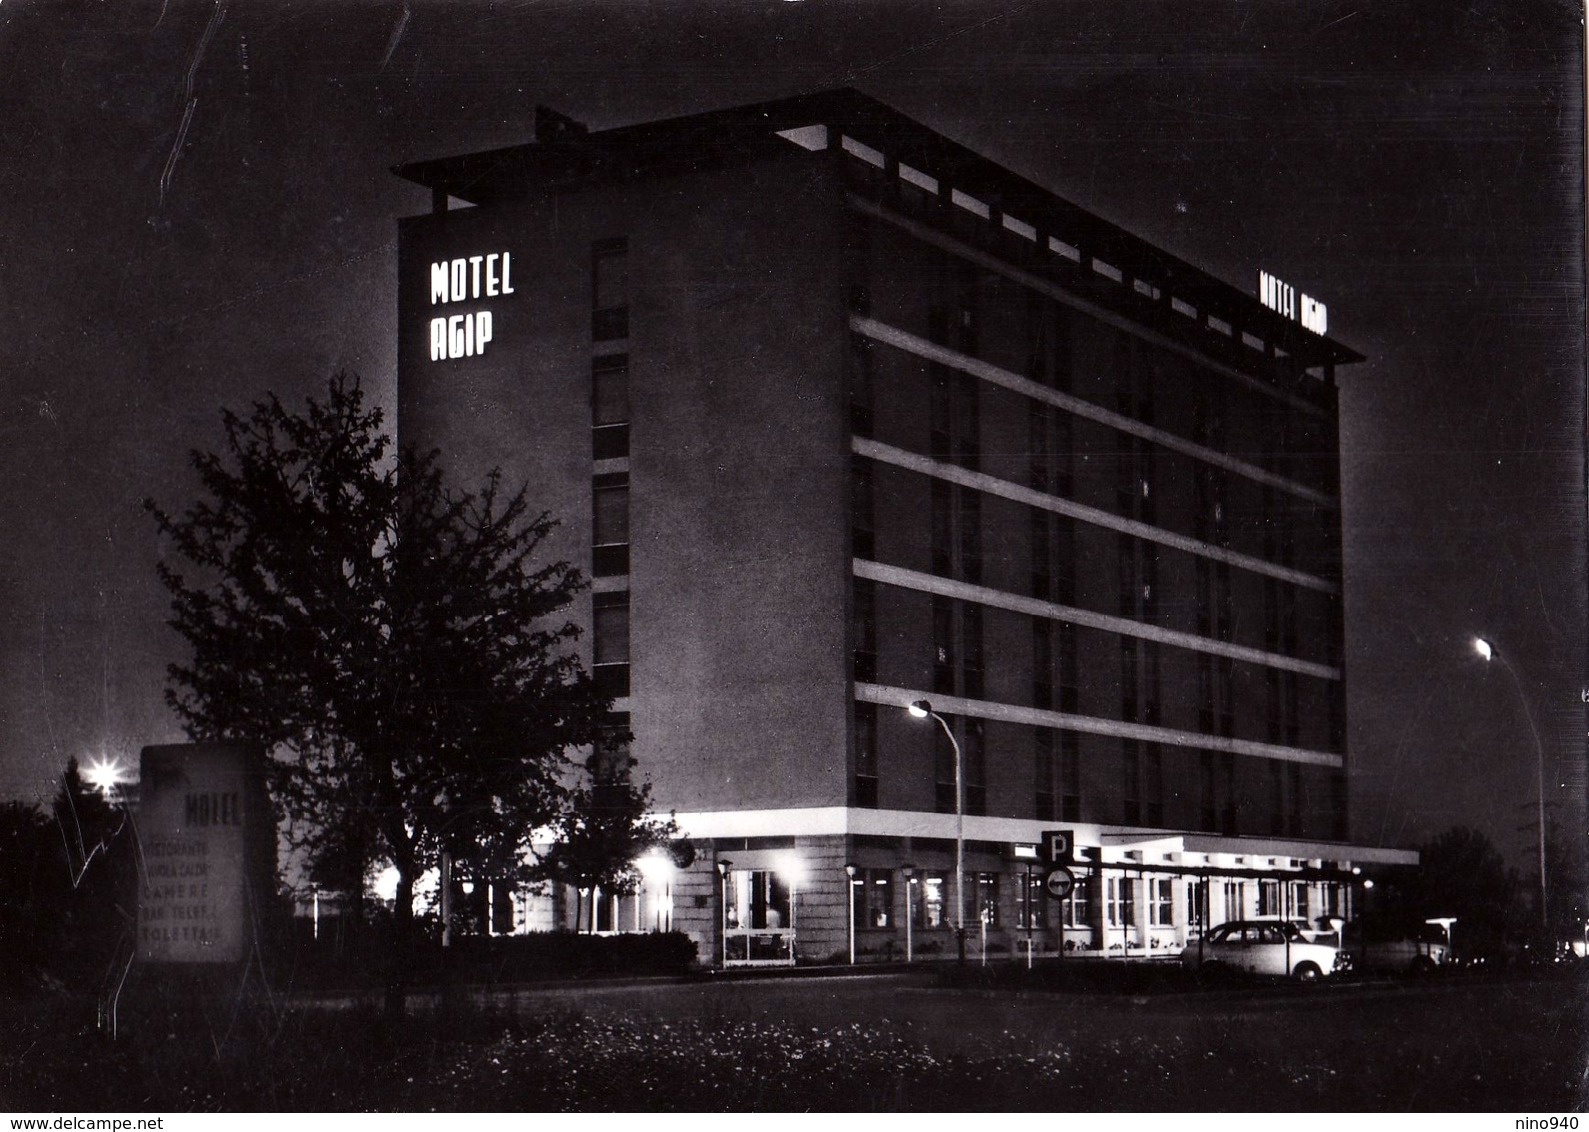 TORINO - Motel AGIP - Notturno - F/G - V: 1968 - Bares, Hoteles Y Restaurantes